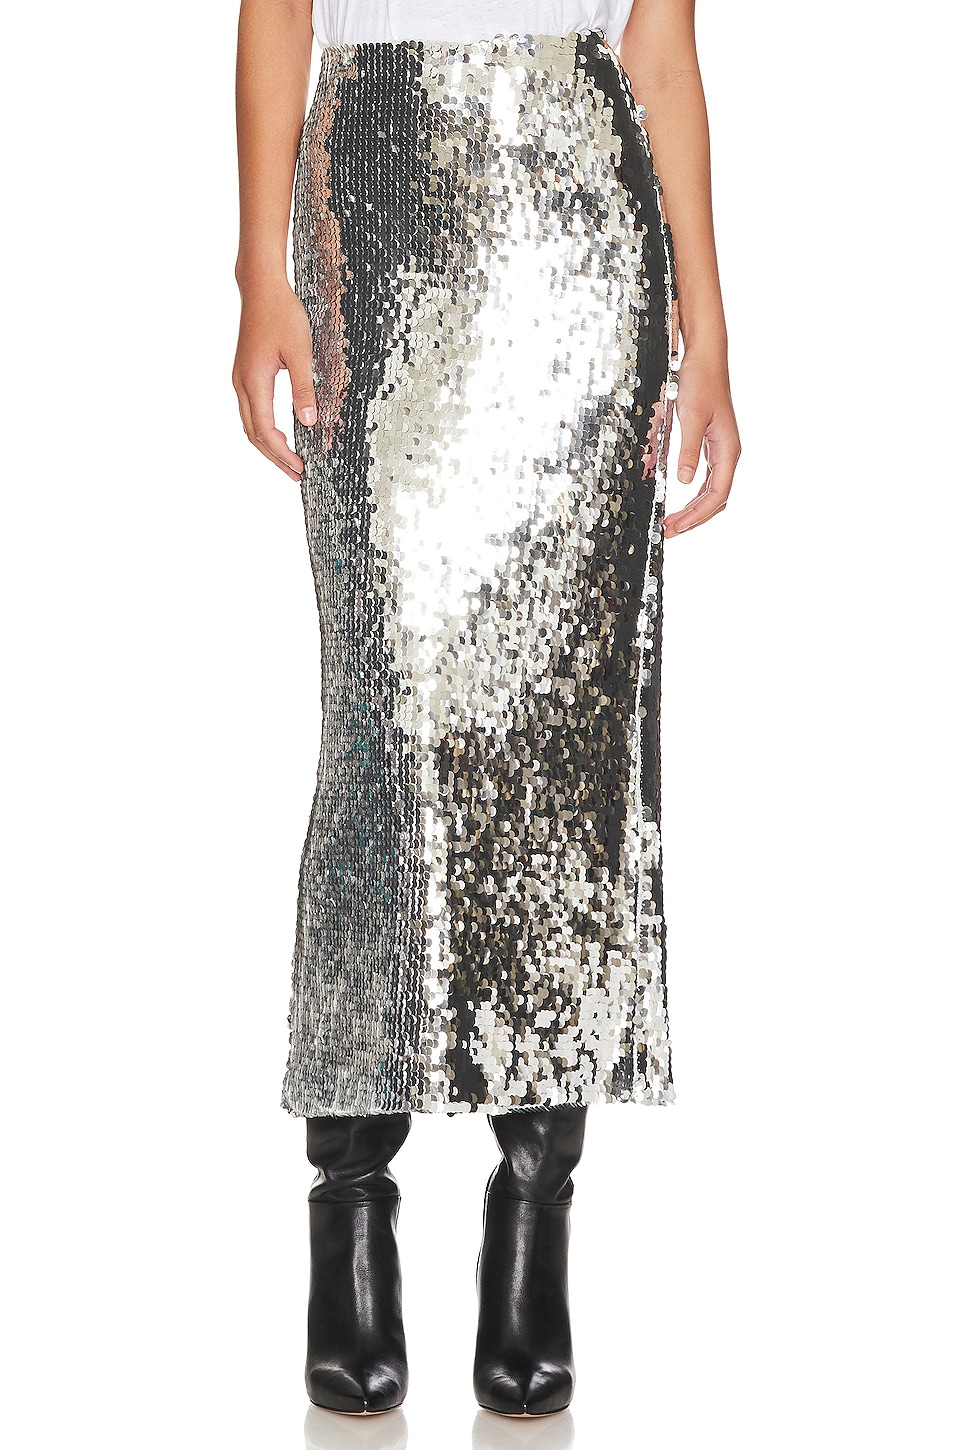 Ronny Kobo Camden Skirt in Piette Sequins Silver | REVOLVE